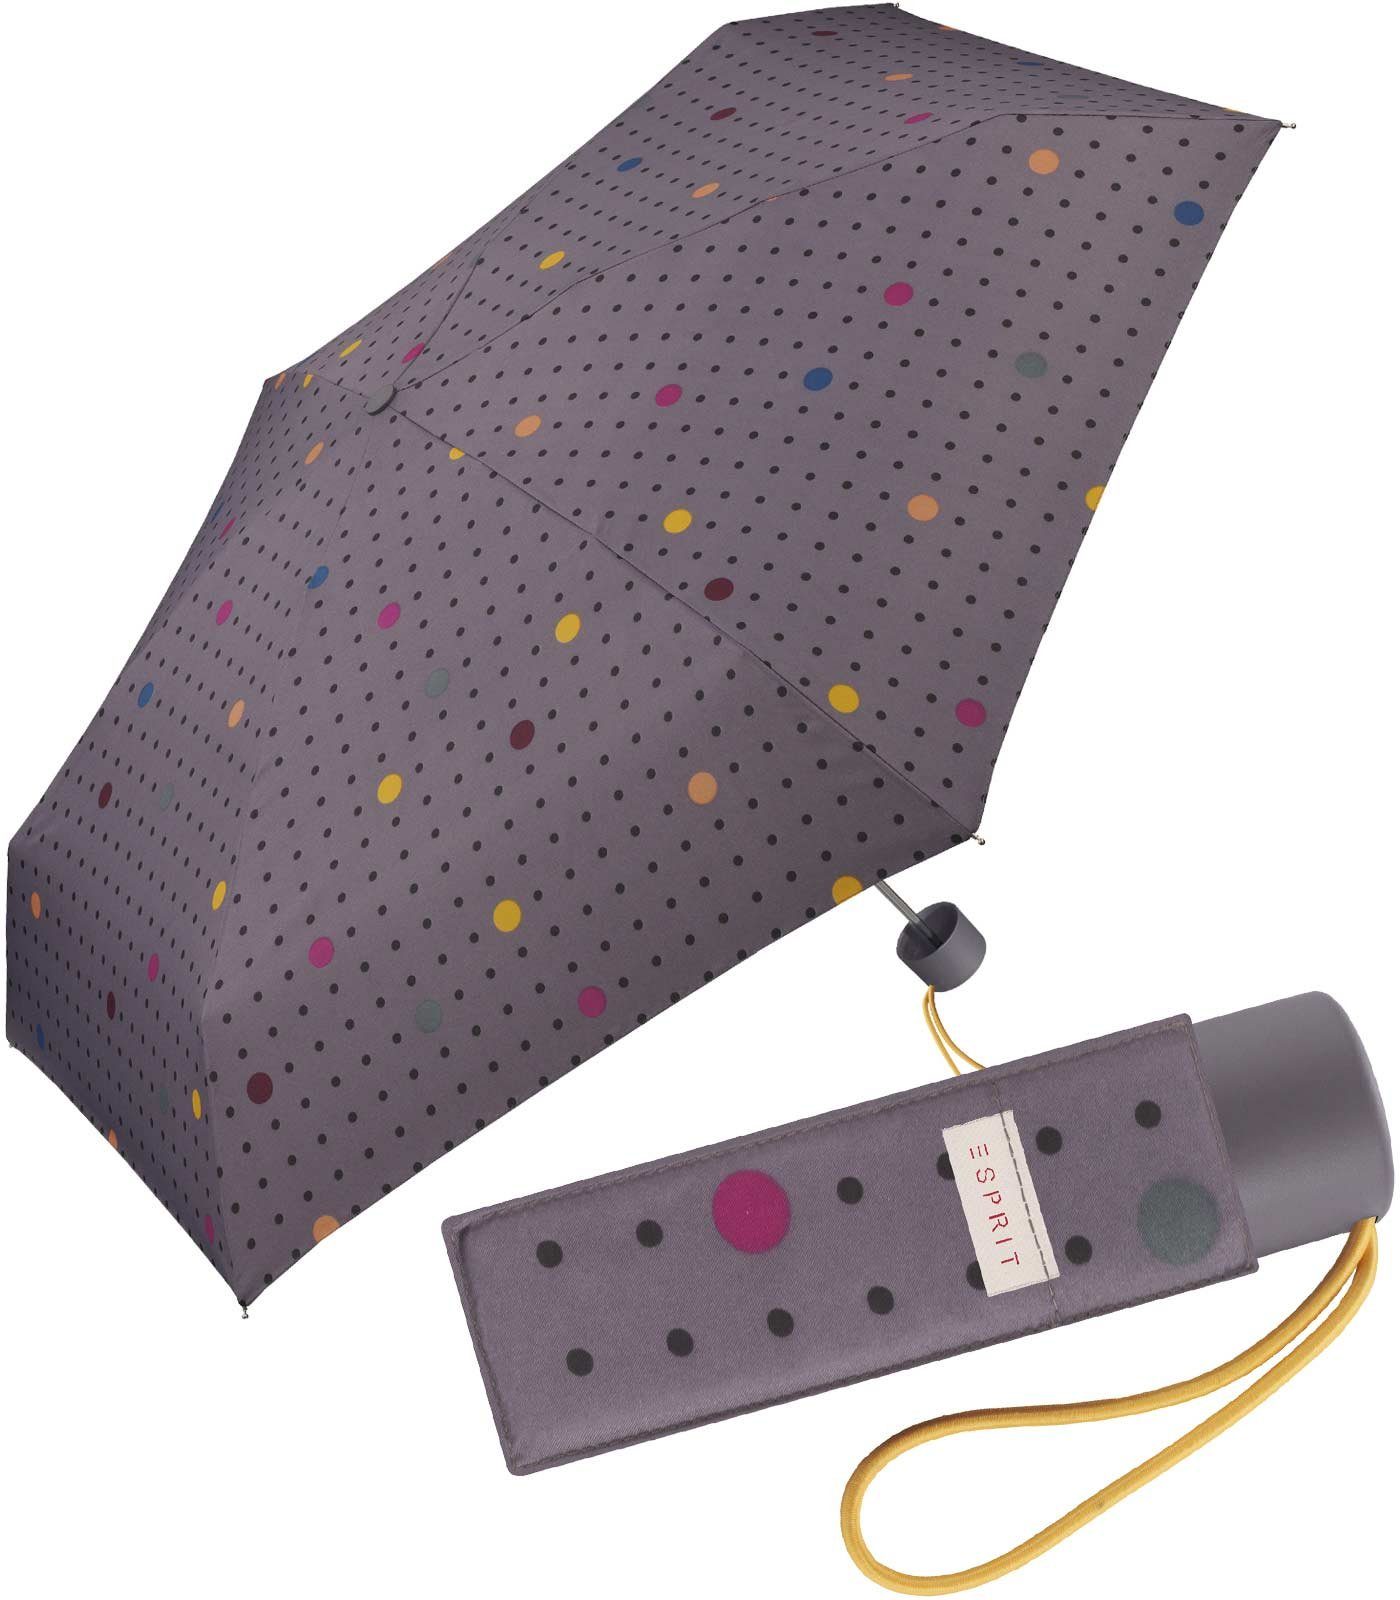 für Esprit handlicher Taschenregenschirm kleiner, Schirm stabil, jugendlichem mit Damen, Punkte-Muster grau leicht,